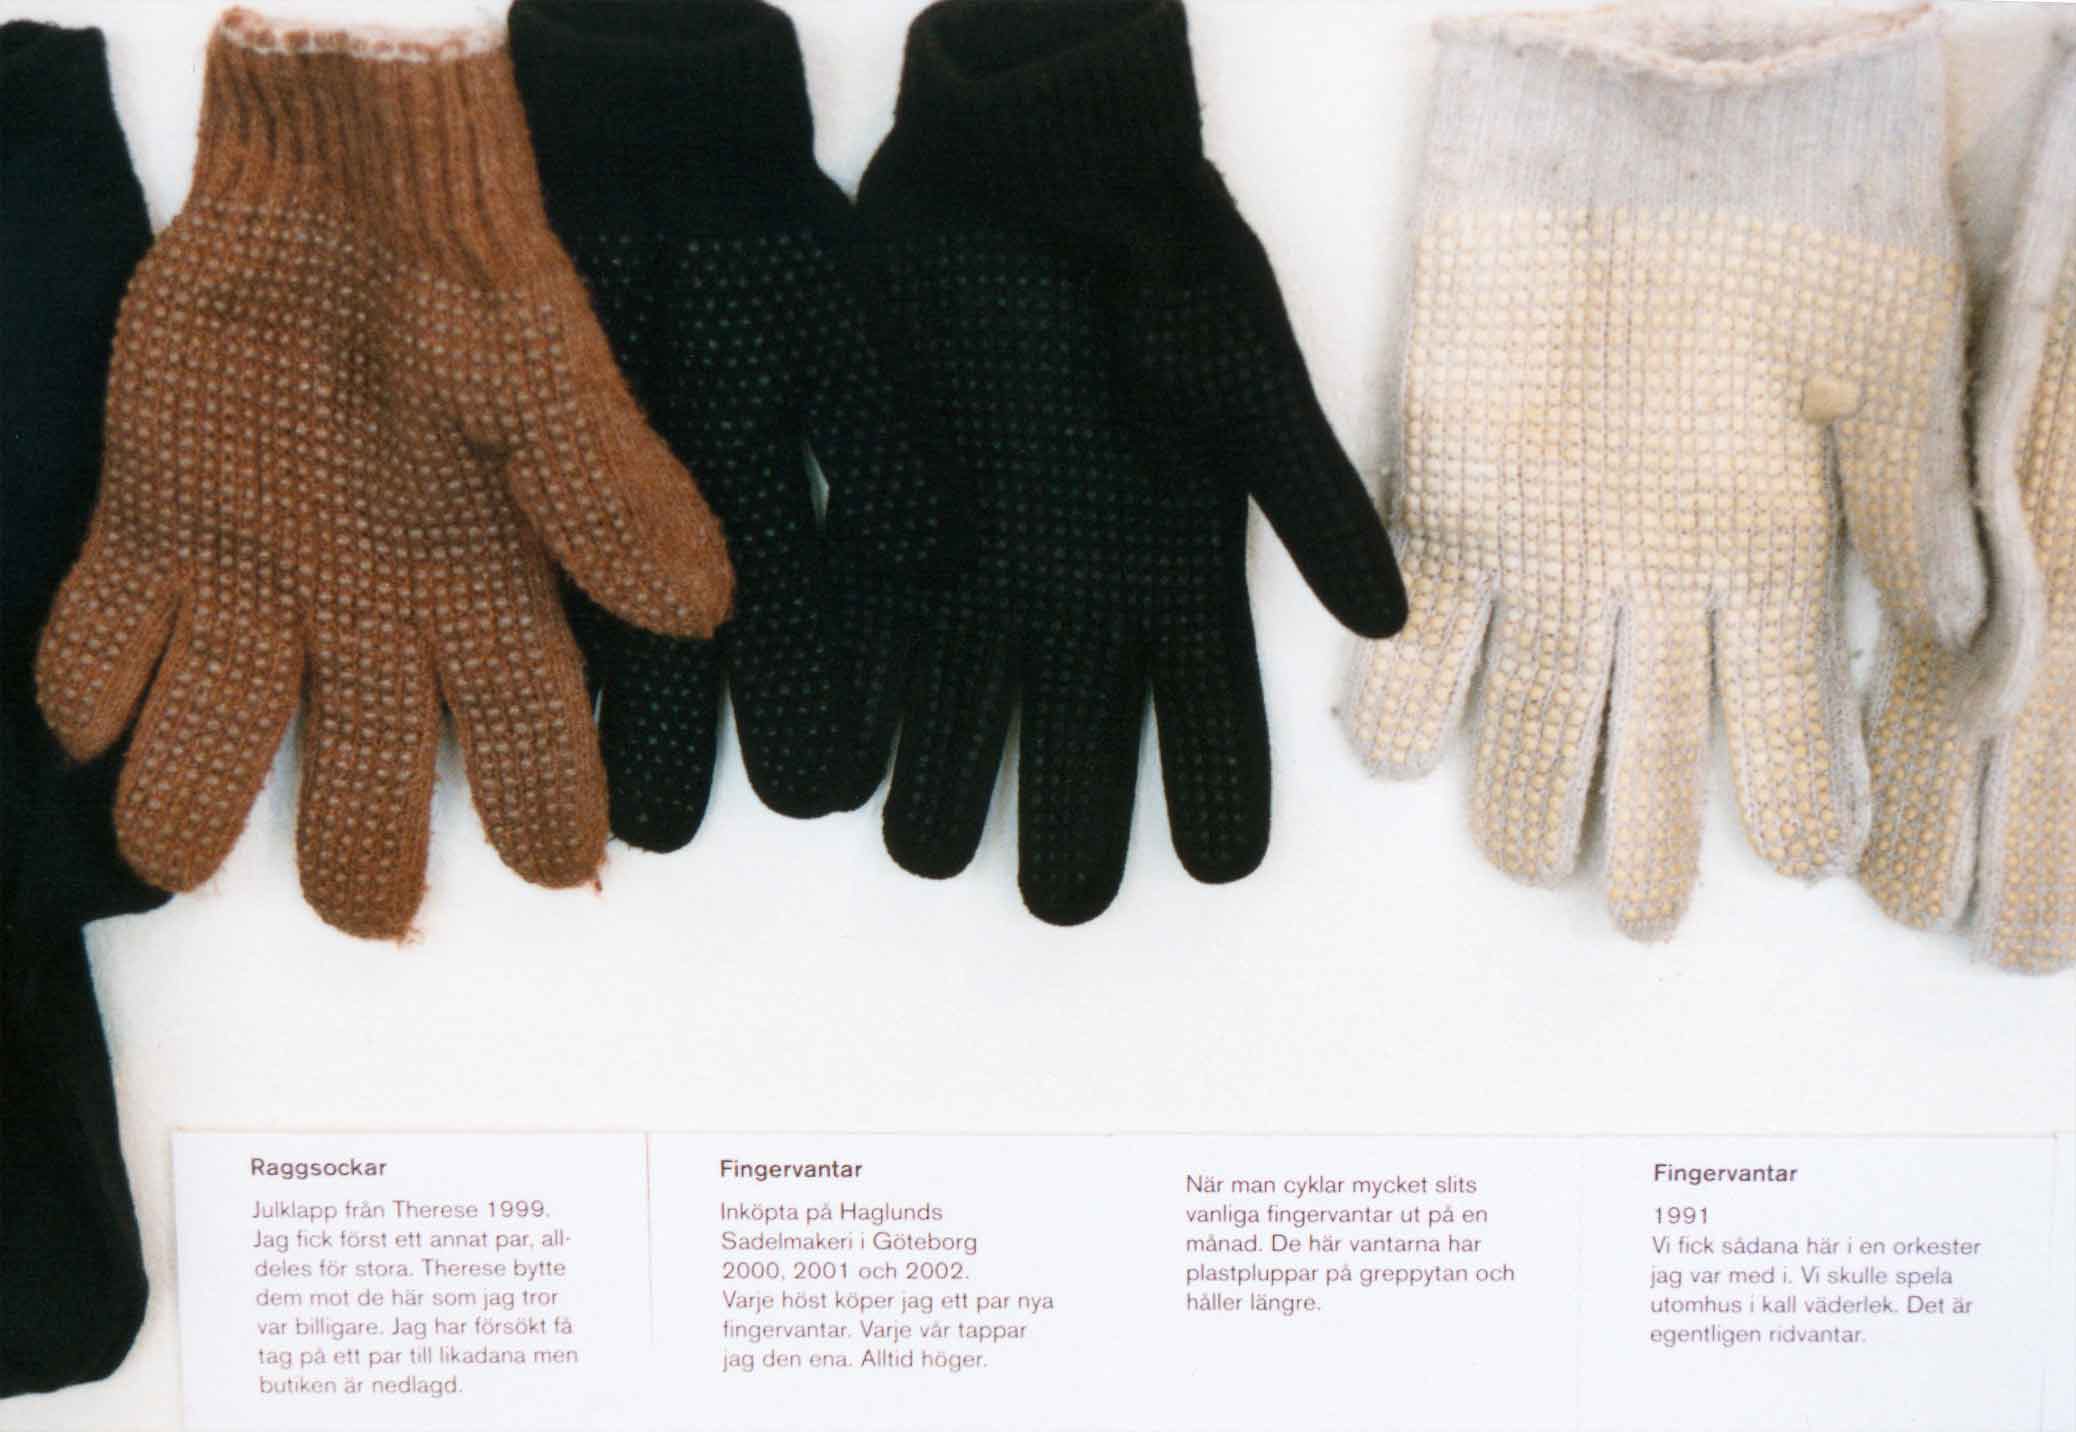 Alla mina kläder, installation med alla mina kläder på Göteborgs konstmuseum 2003. Detalj med fingervantar. 